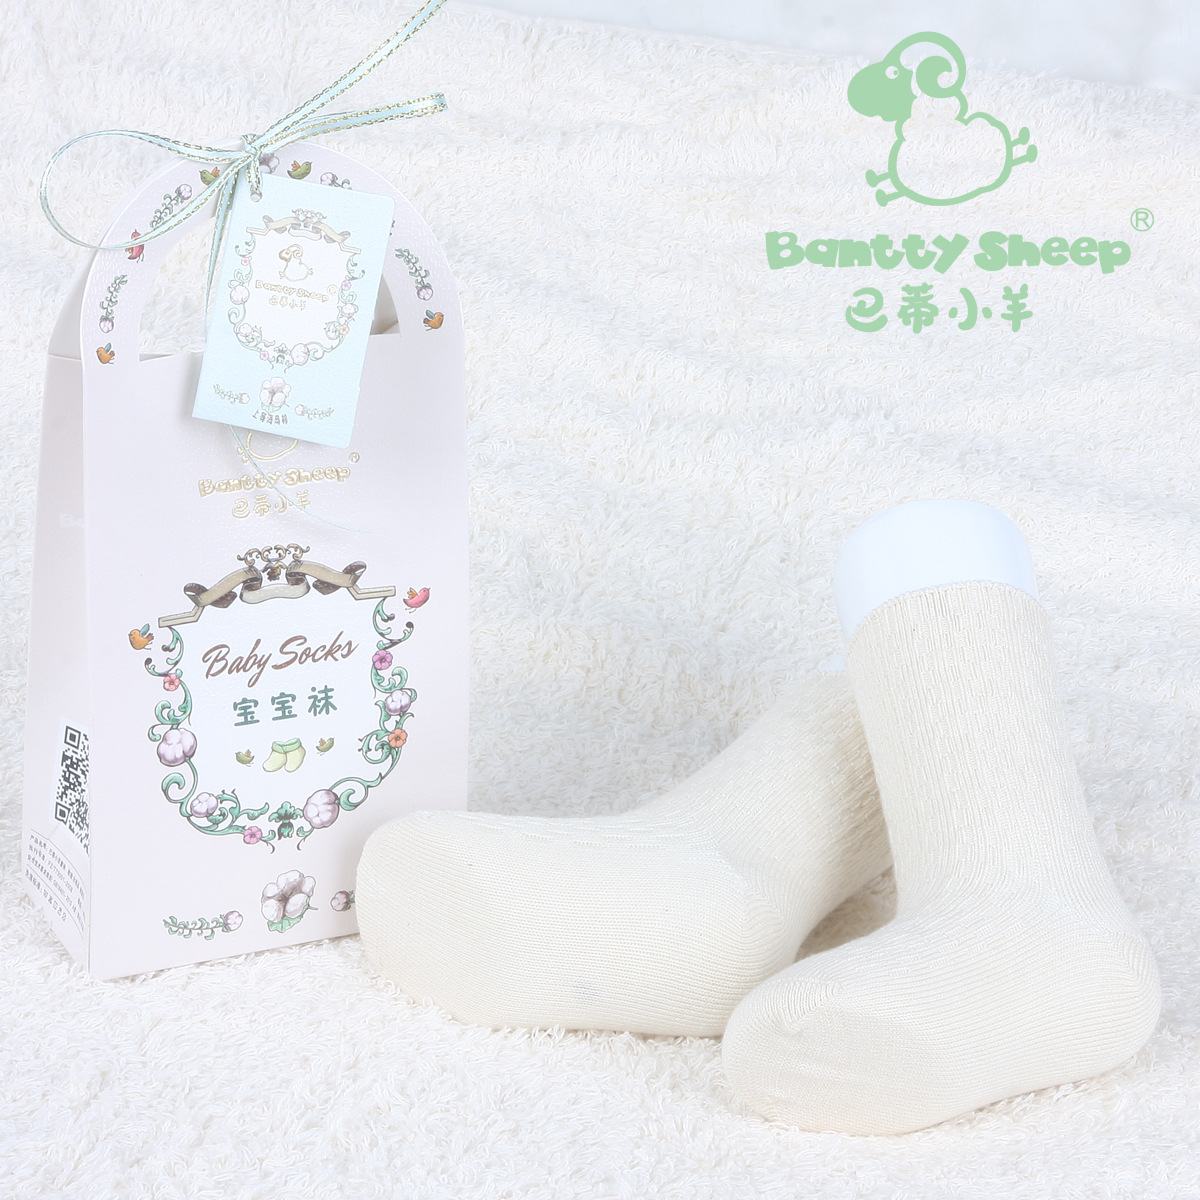 巴蒂小羊婴童袜纯天然婴儿袜代理,样品编号:40719